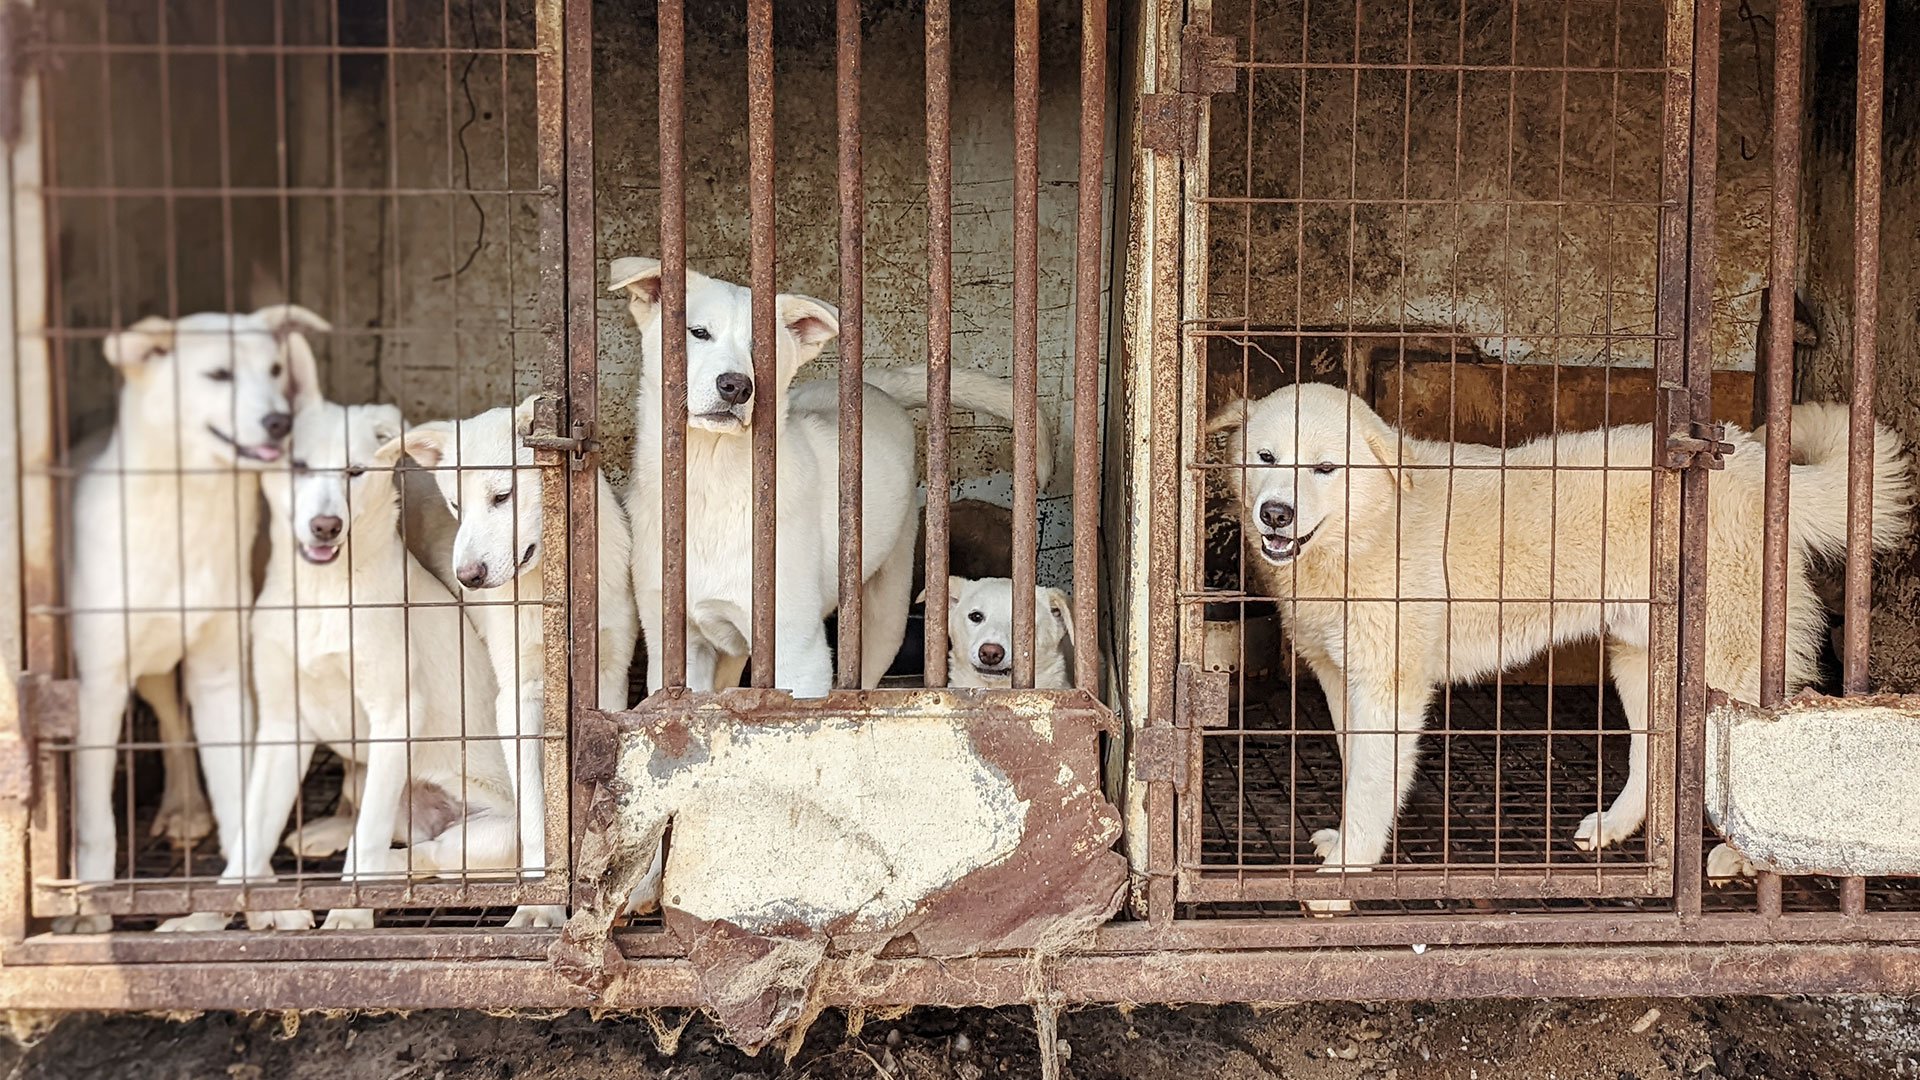 Siheung Dog Meat Farm Shutdown 2023